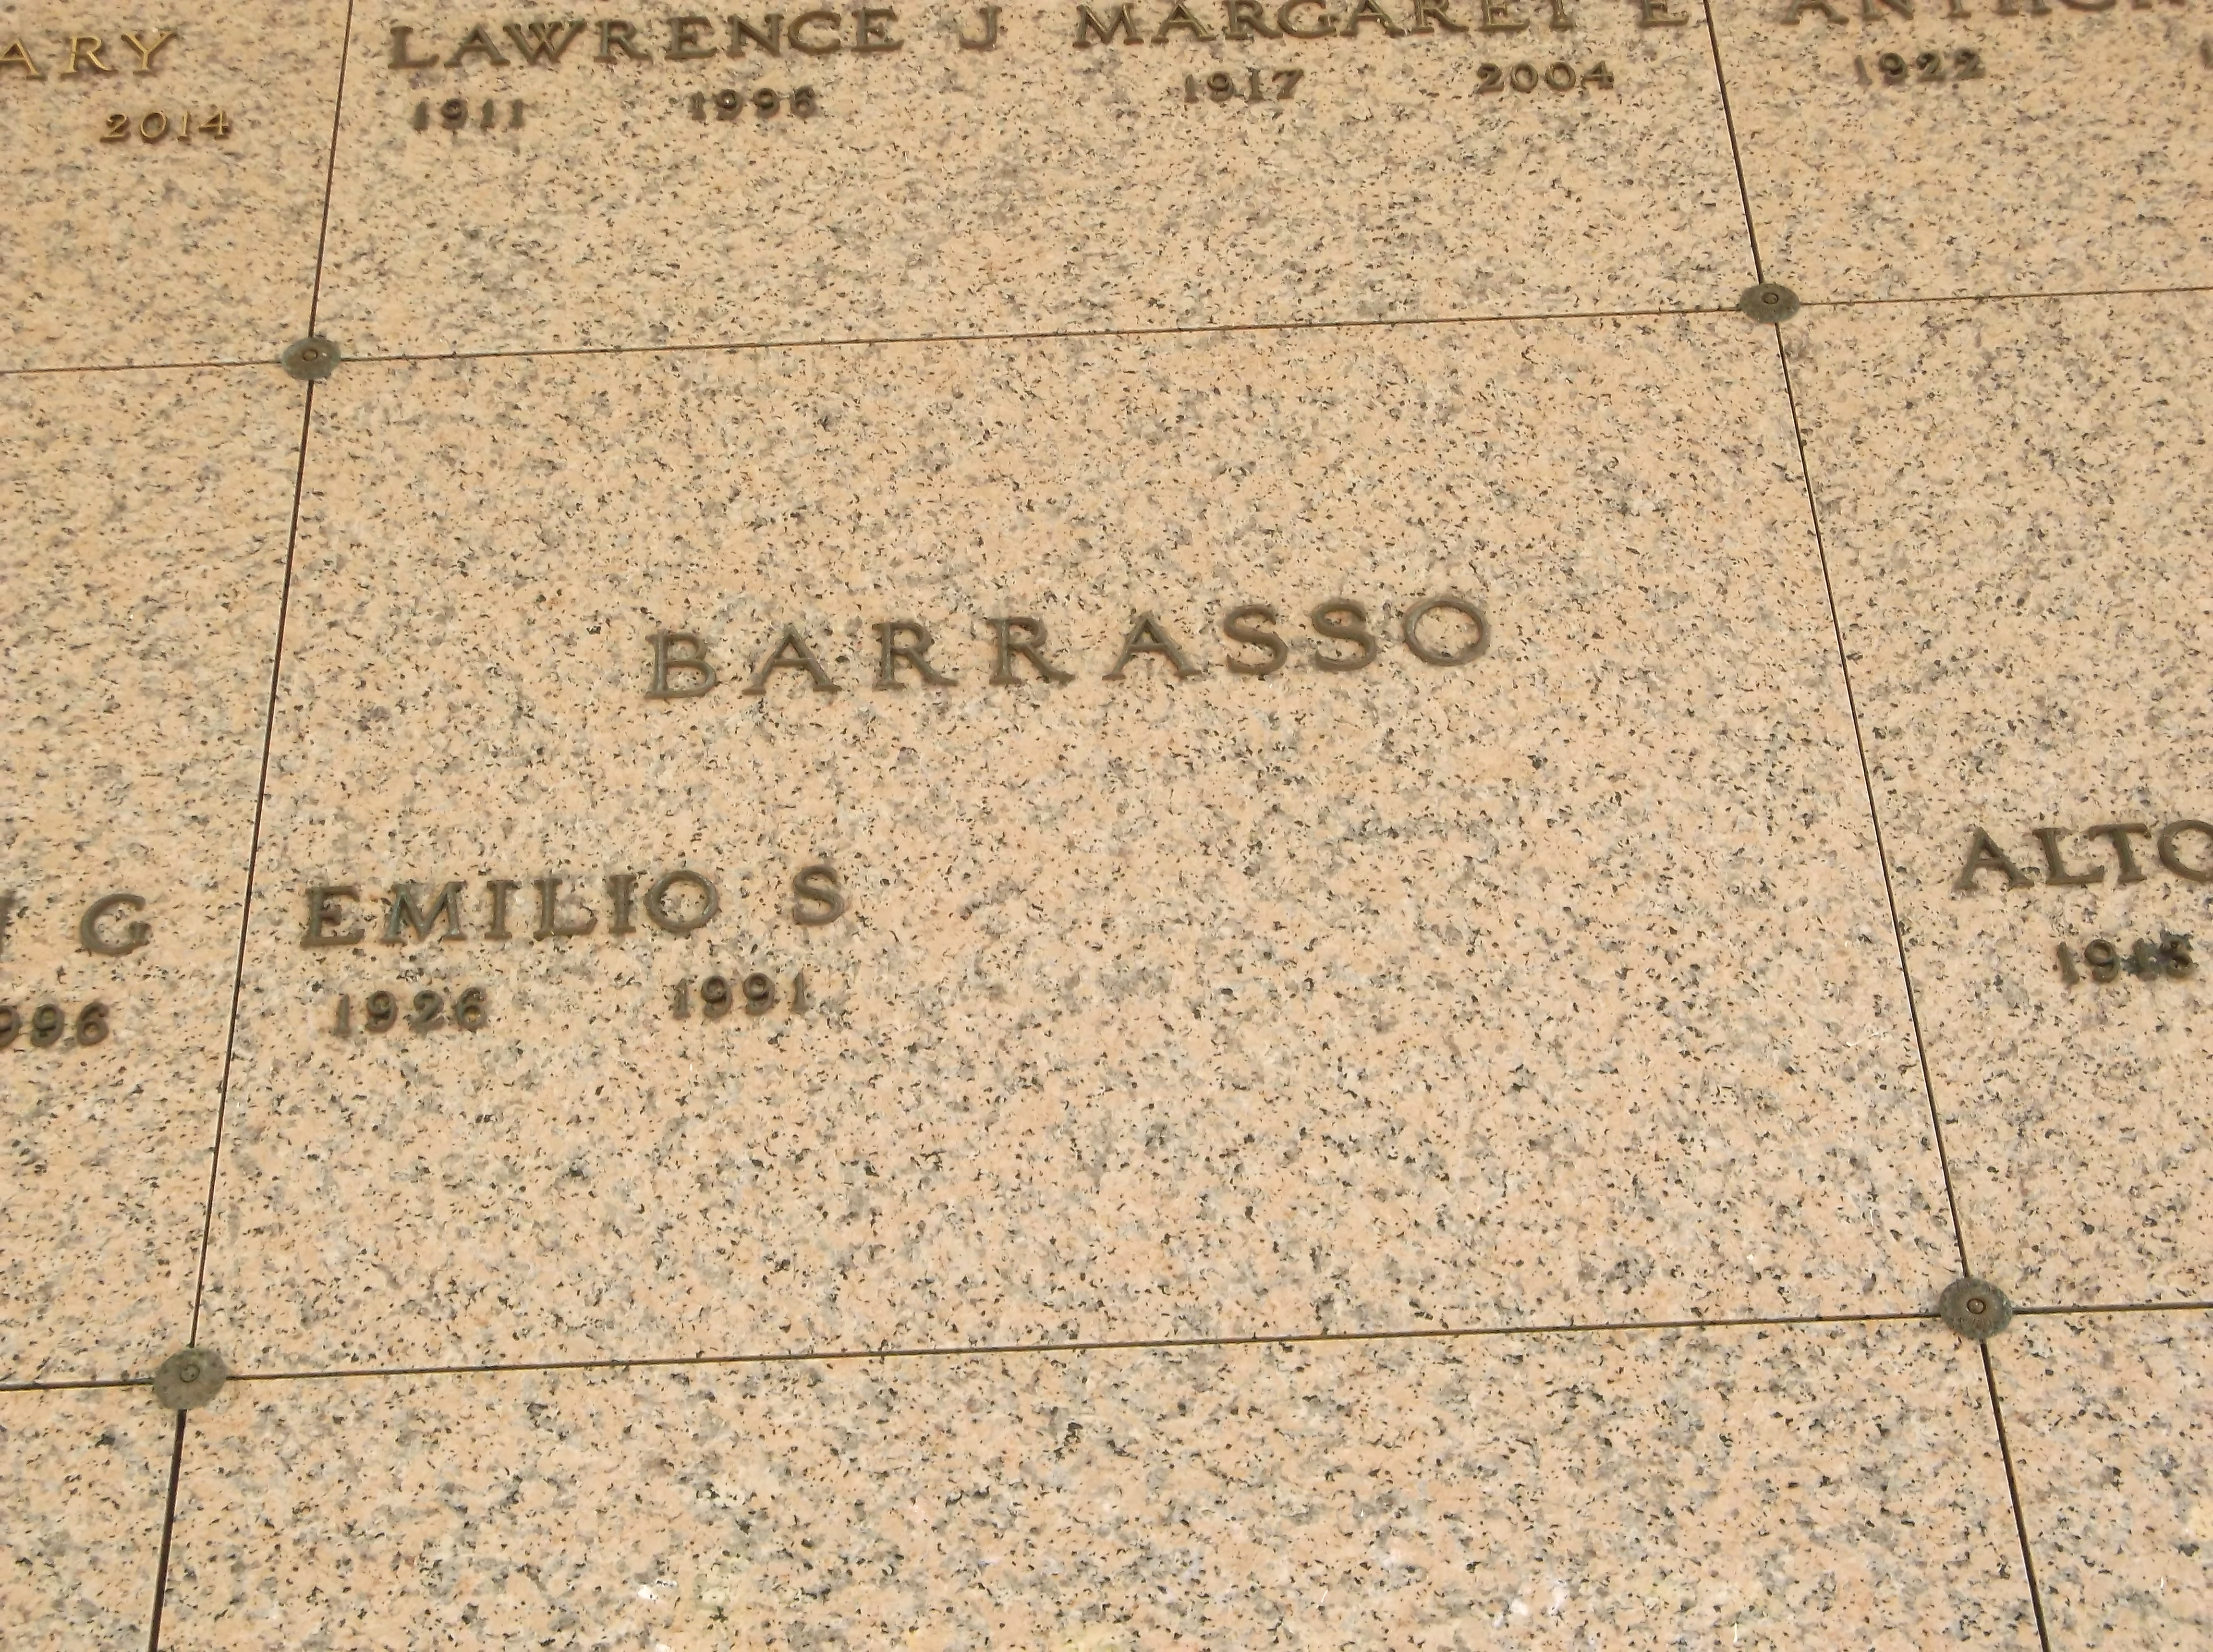 Emilio S Barrasso